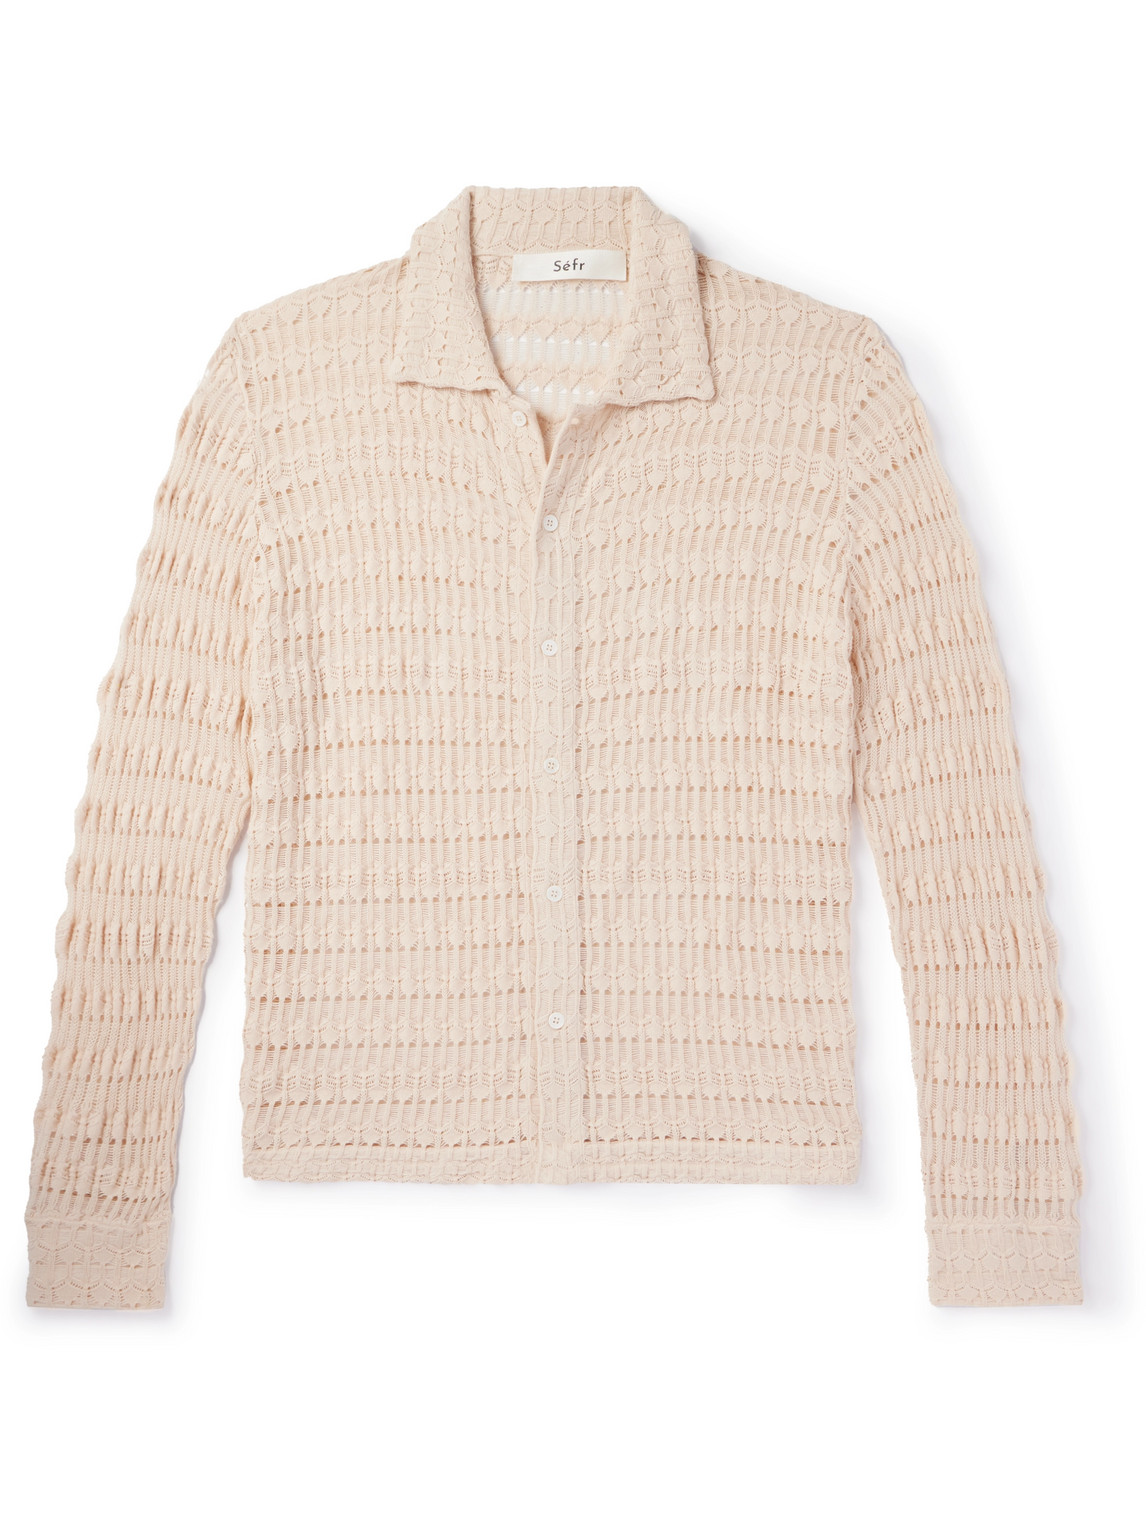 Séfr Yasu Cutaway-collar Crocheted Cotton Shirt In Neutral